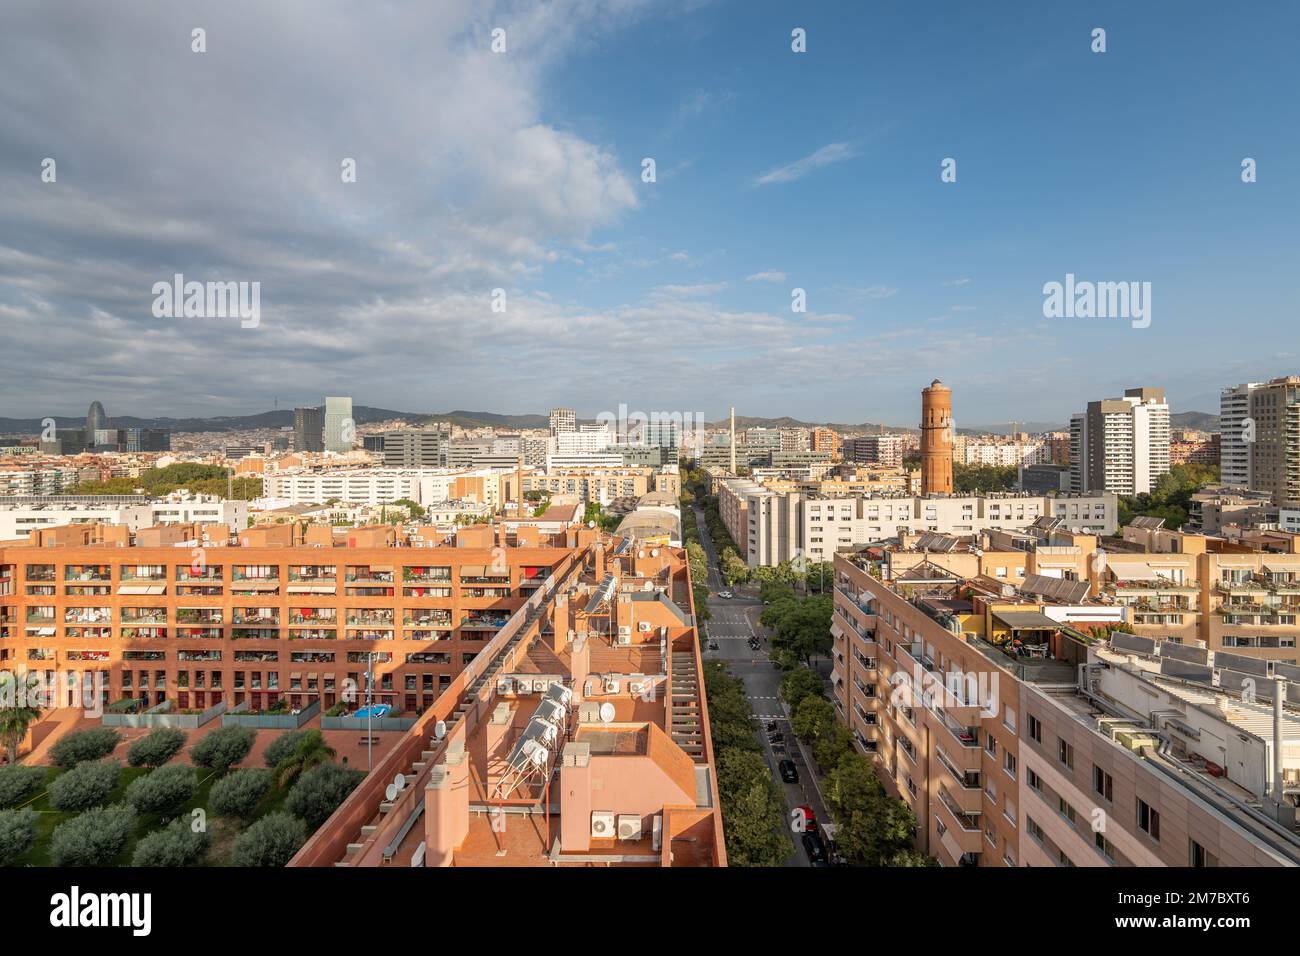 Ein Blick auf die Gegend von Poblenou, das alte Industriegebiet, das in ein neues modernes Viertel umgewandelt wurde, im Küstengebiet von Barcelona, Spanien Stockfoto